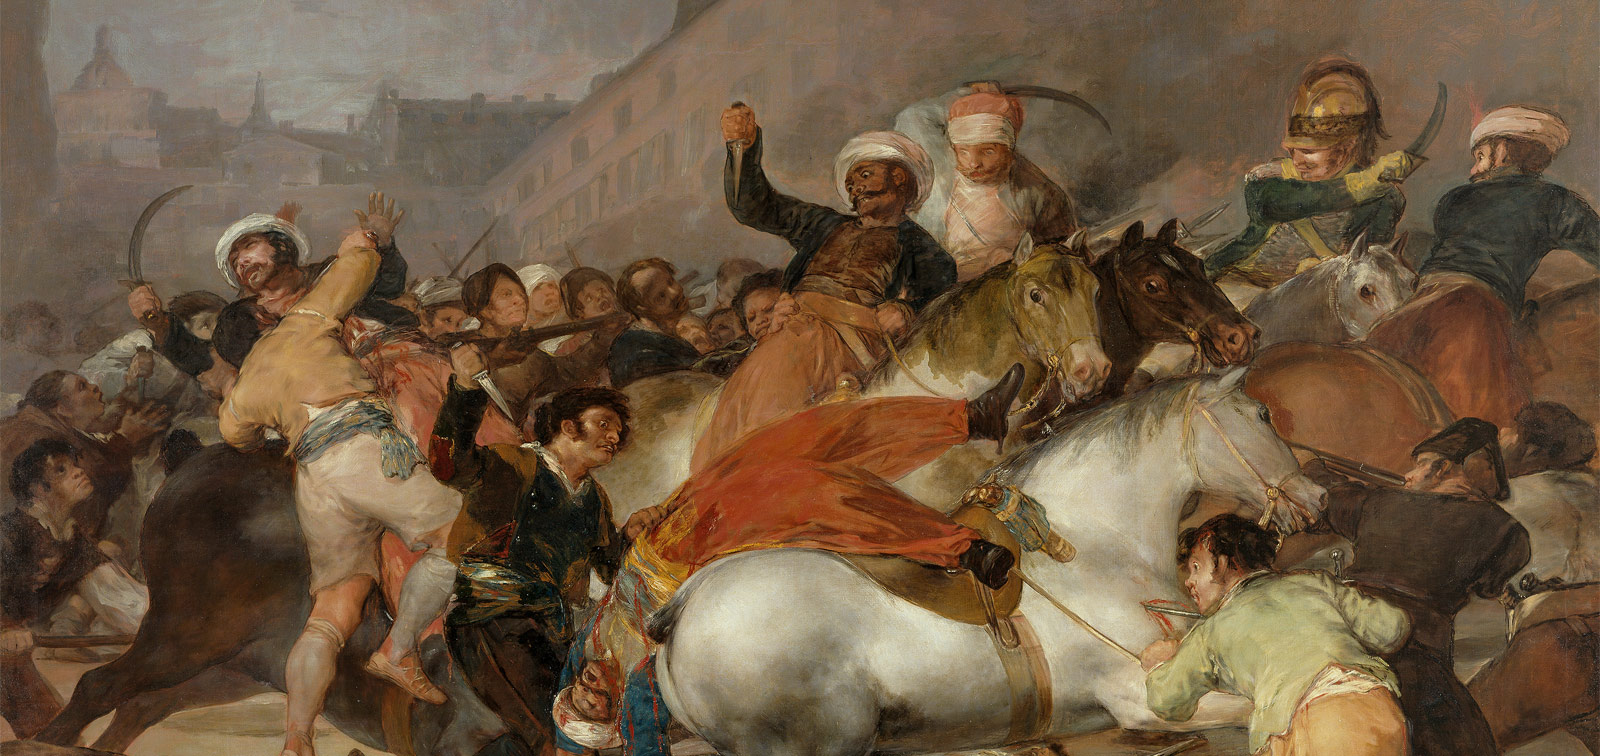 Goya en tiempos de guerra